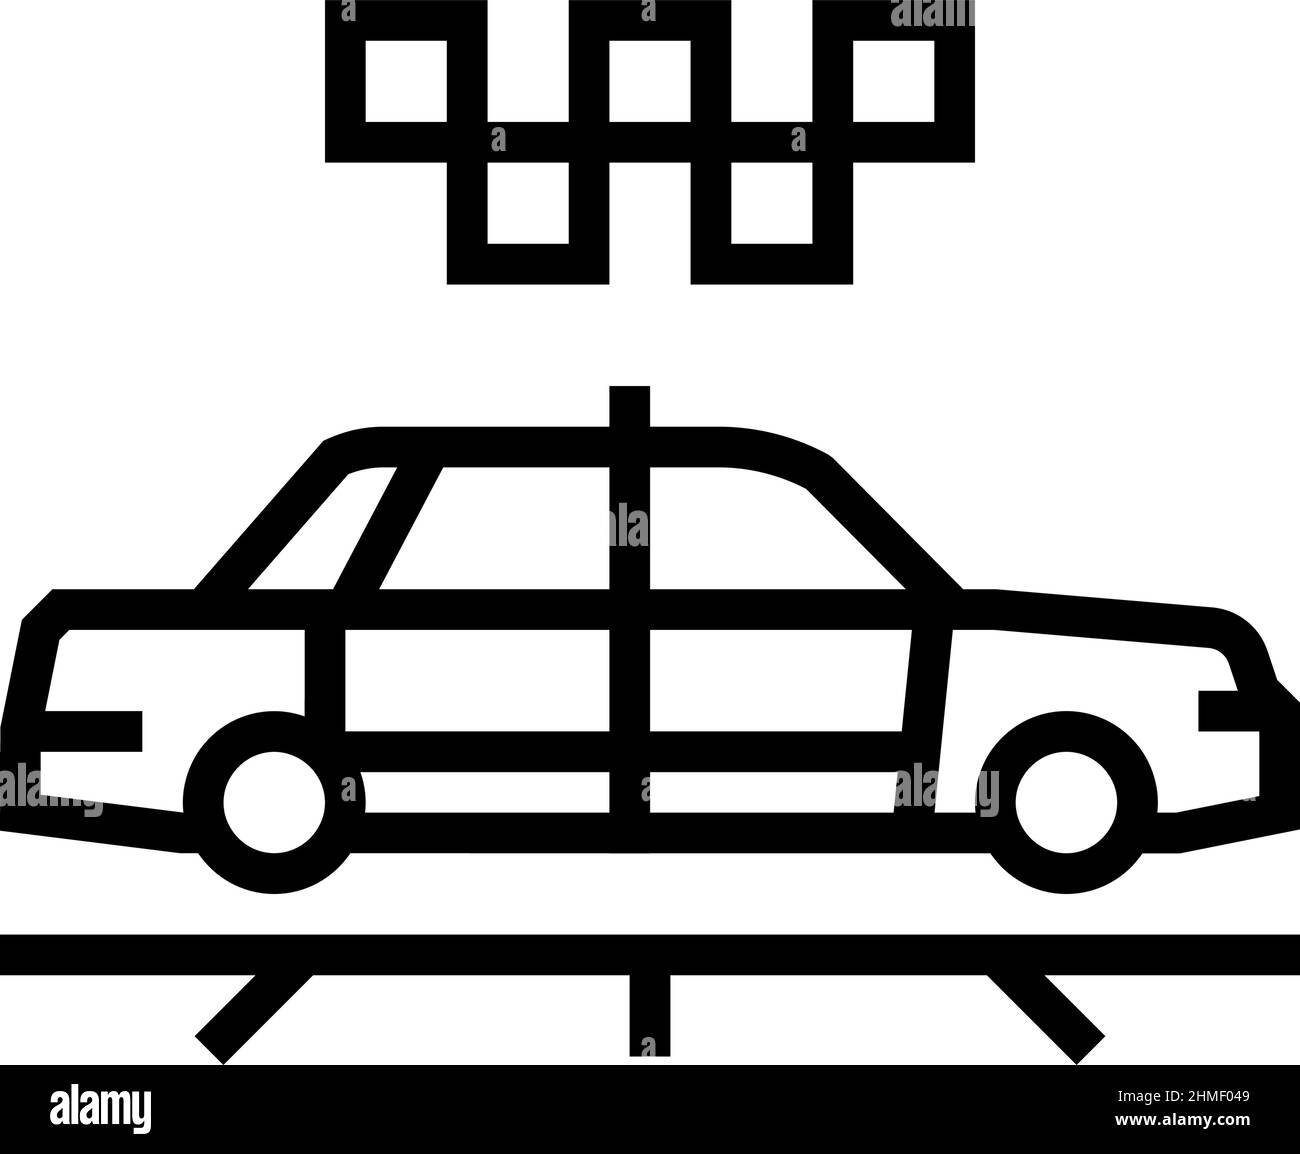 Abbildung des Symbols für die Taxi-Kabinenlinie Stock Vektor